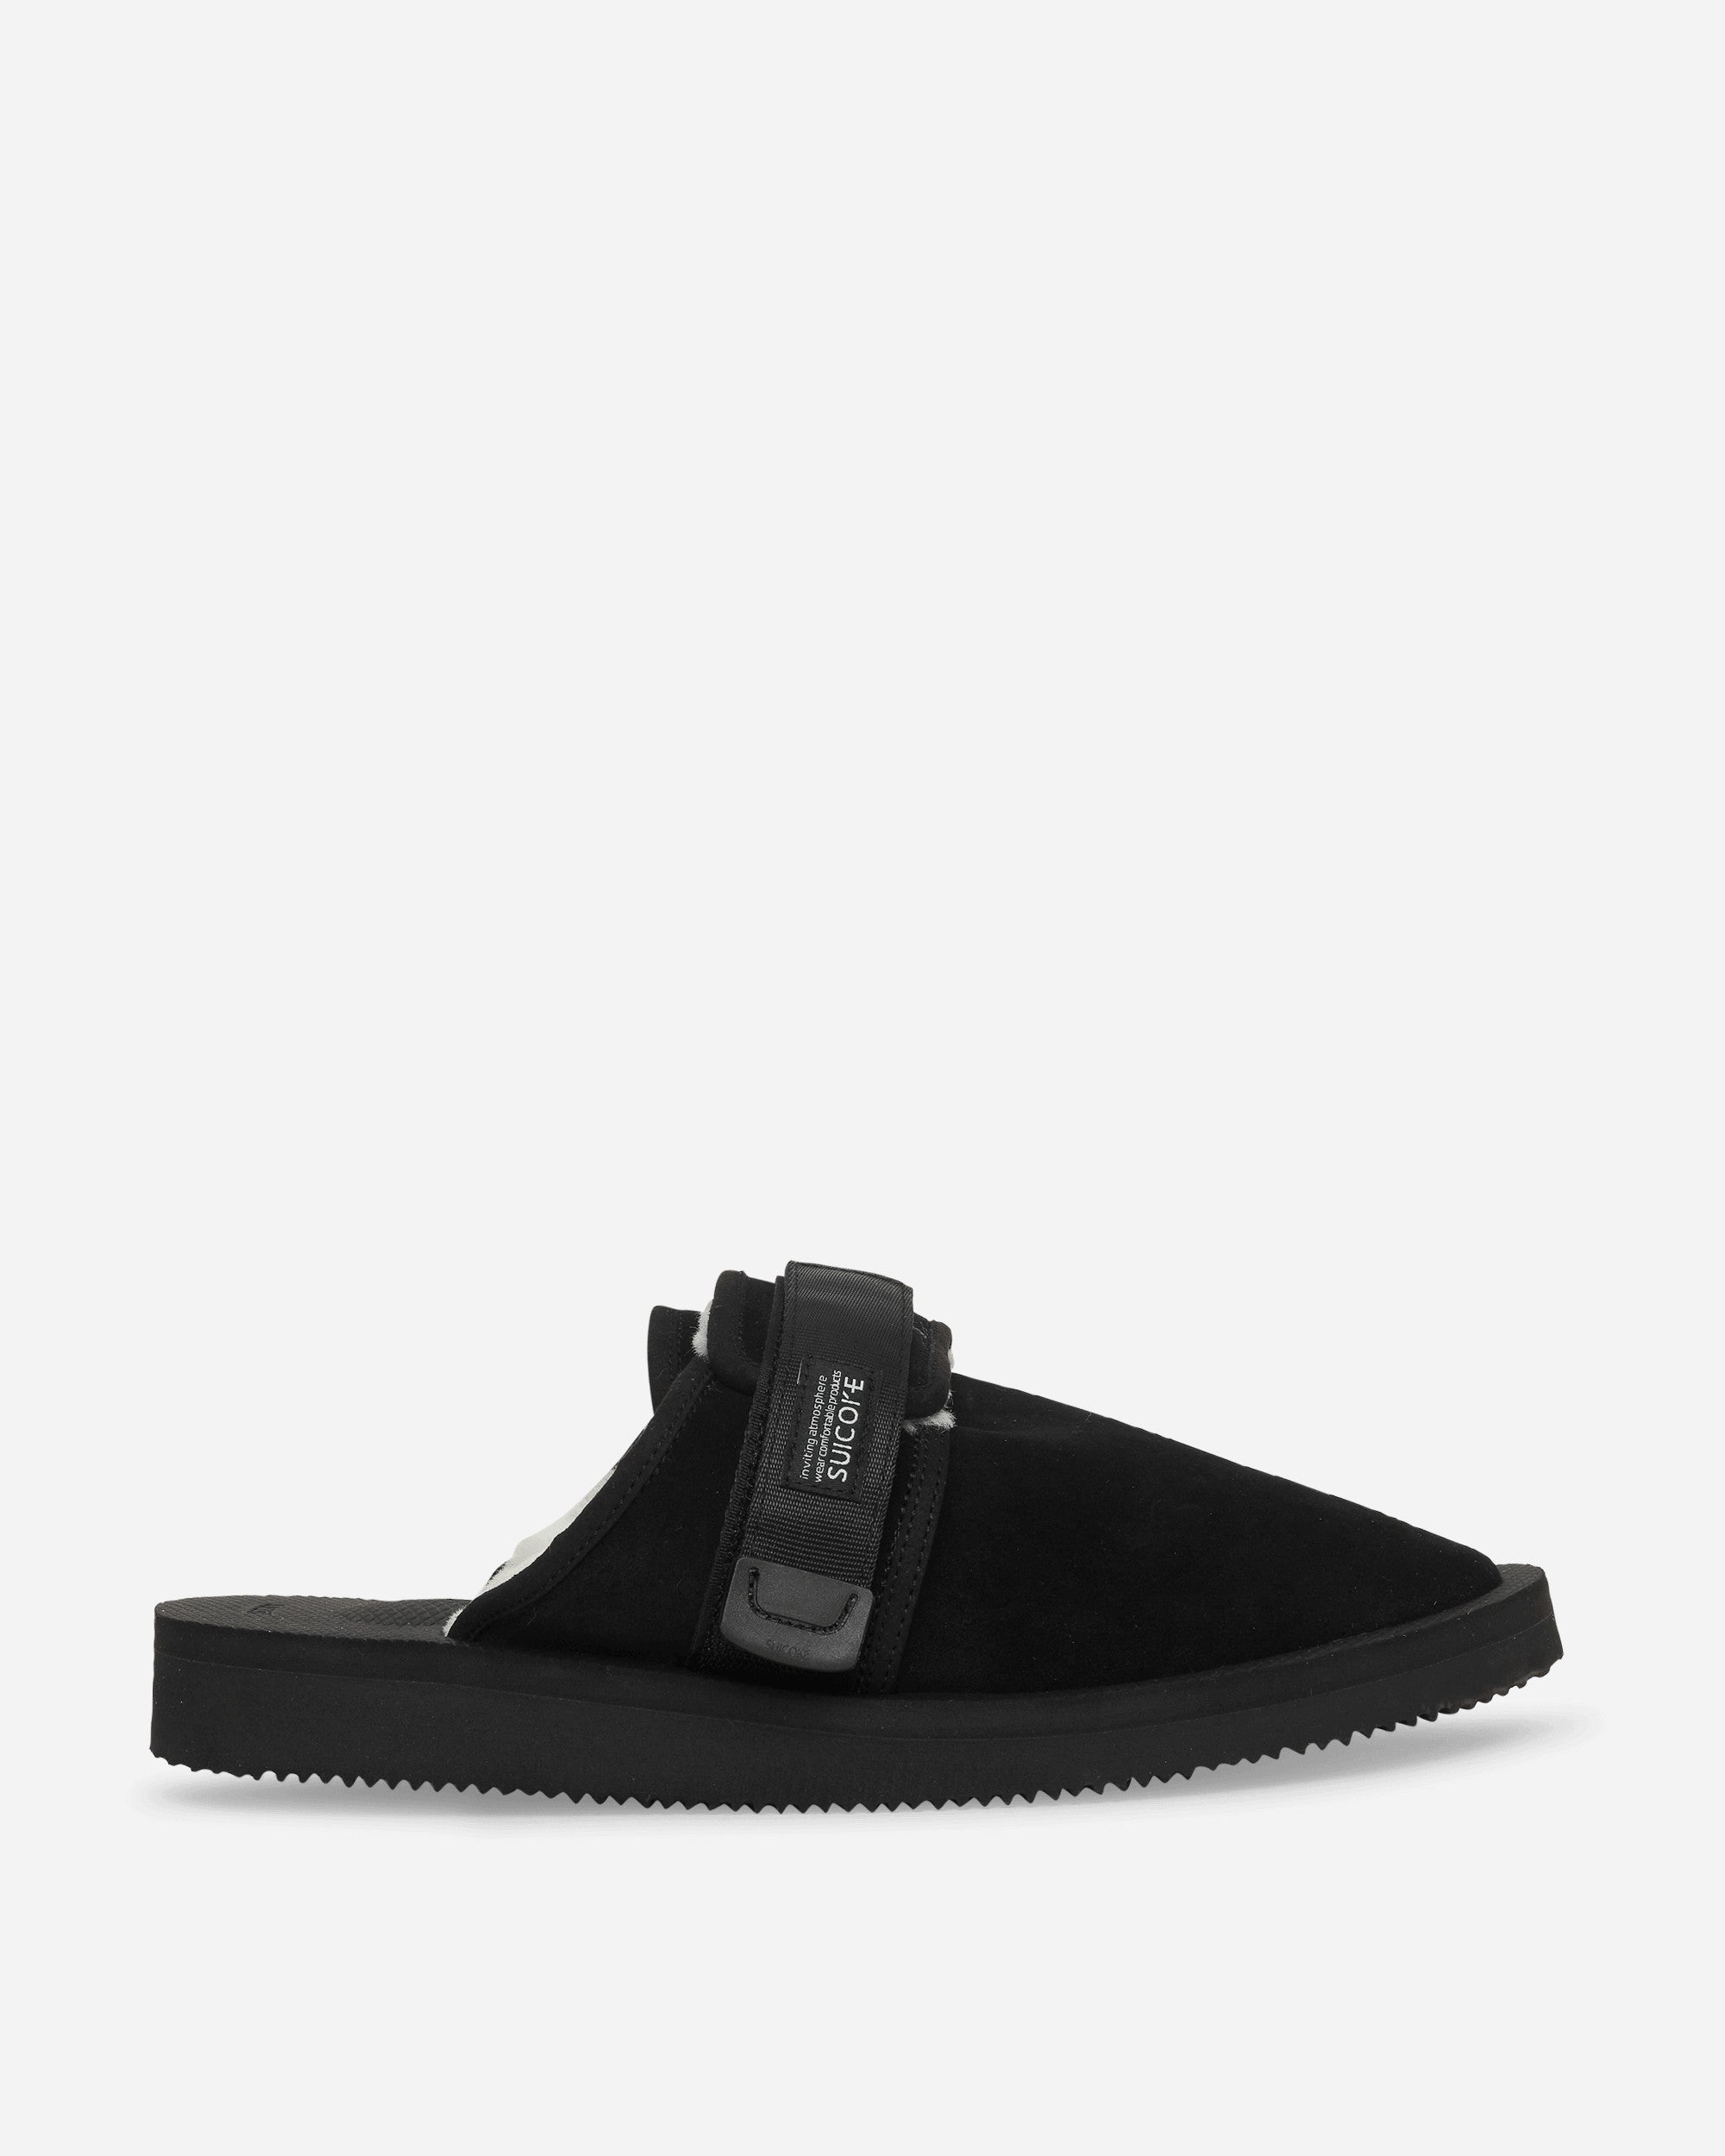 Suicoke Zavo Mab Black Sandals and Slides Sandal OG072Mab BLK